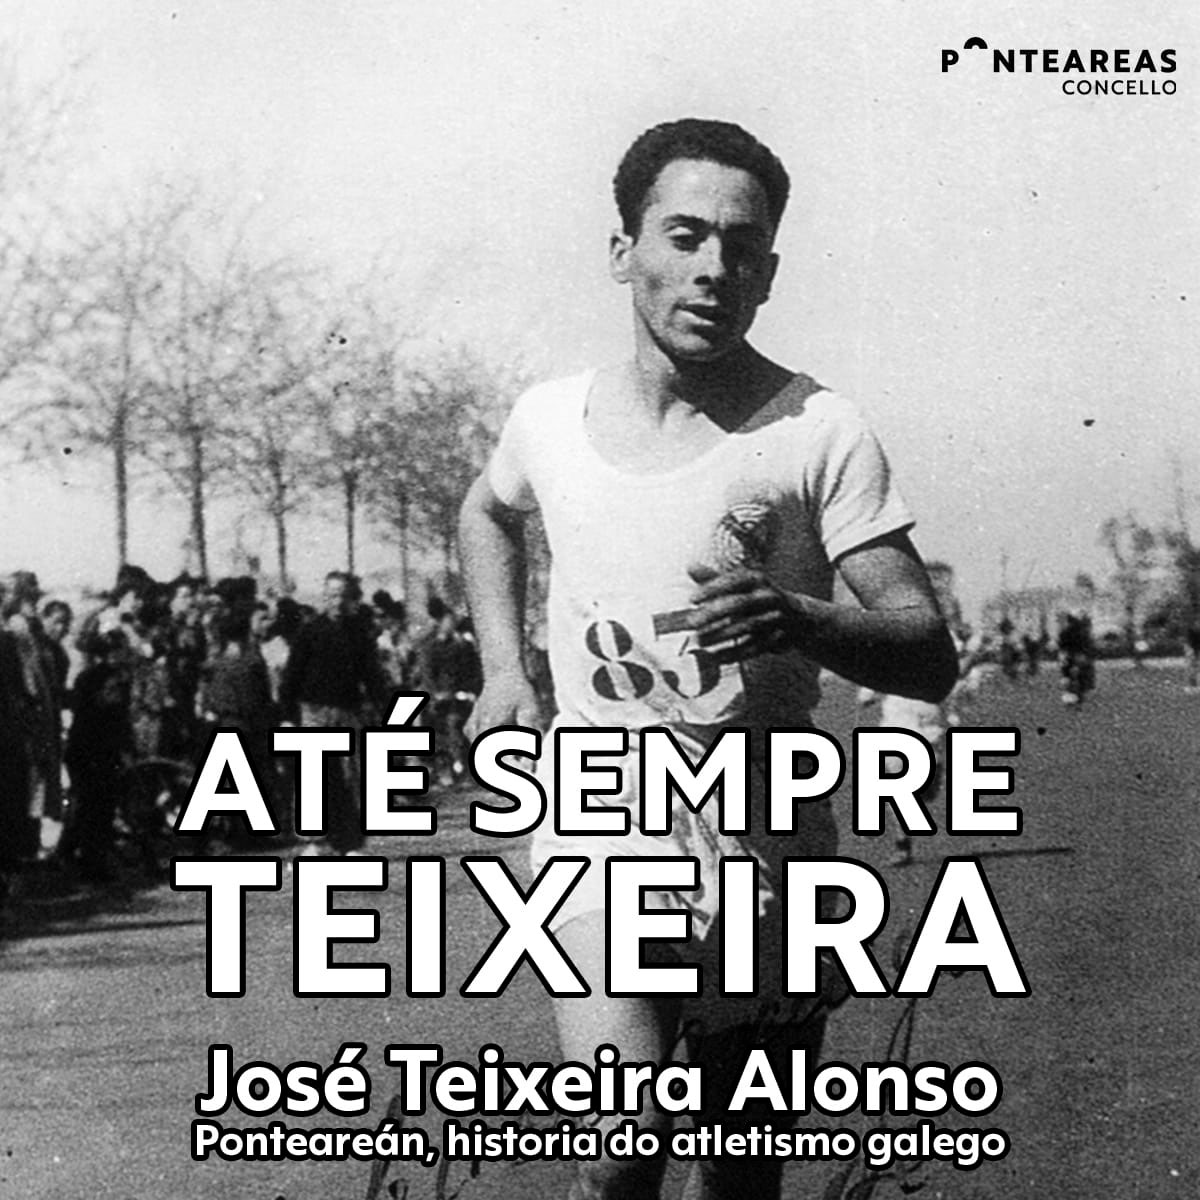 Ponteareas lamenta a perda de José Teixeira, unha lenda do atletismo galego